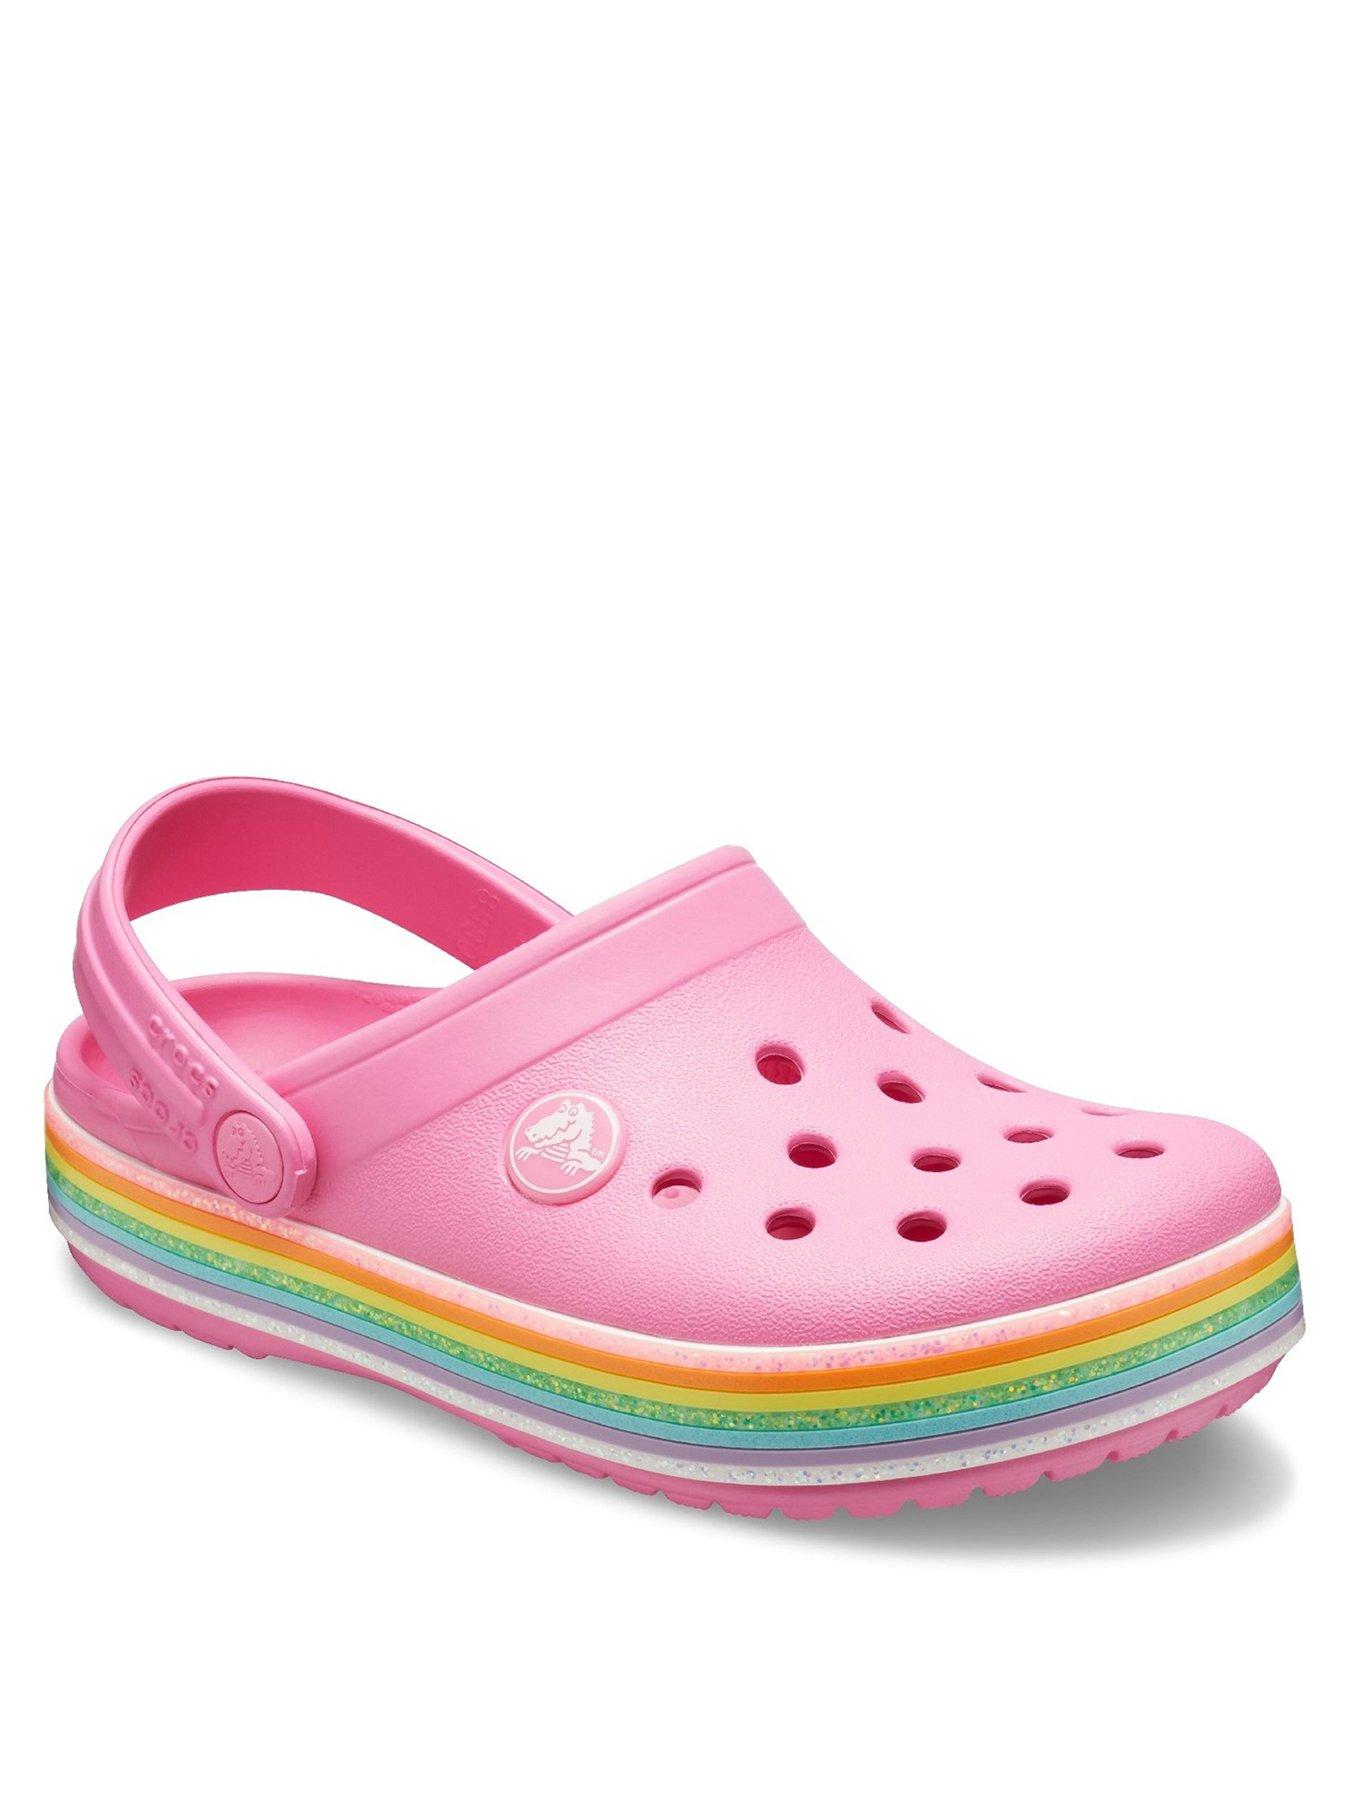 baby girl crocs size 4